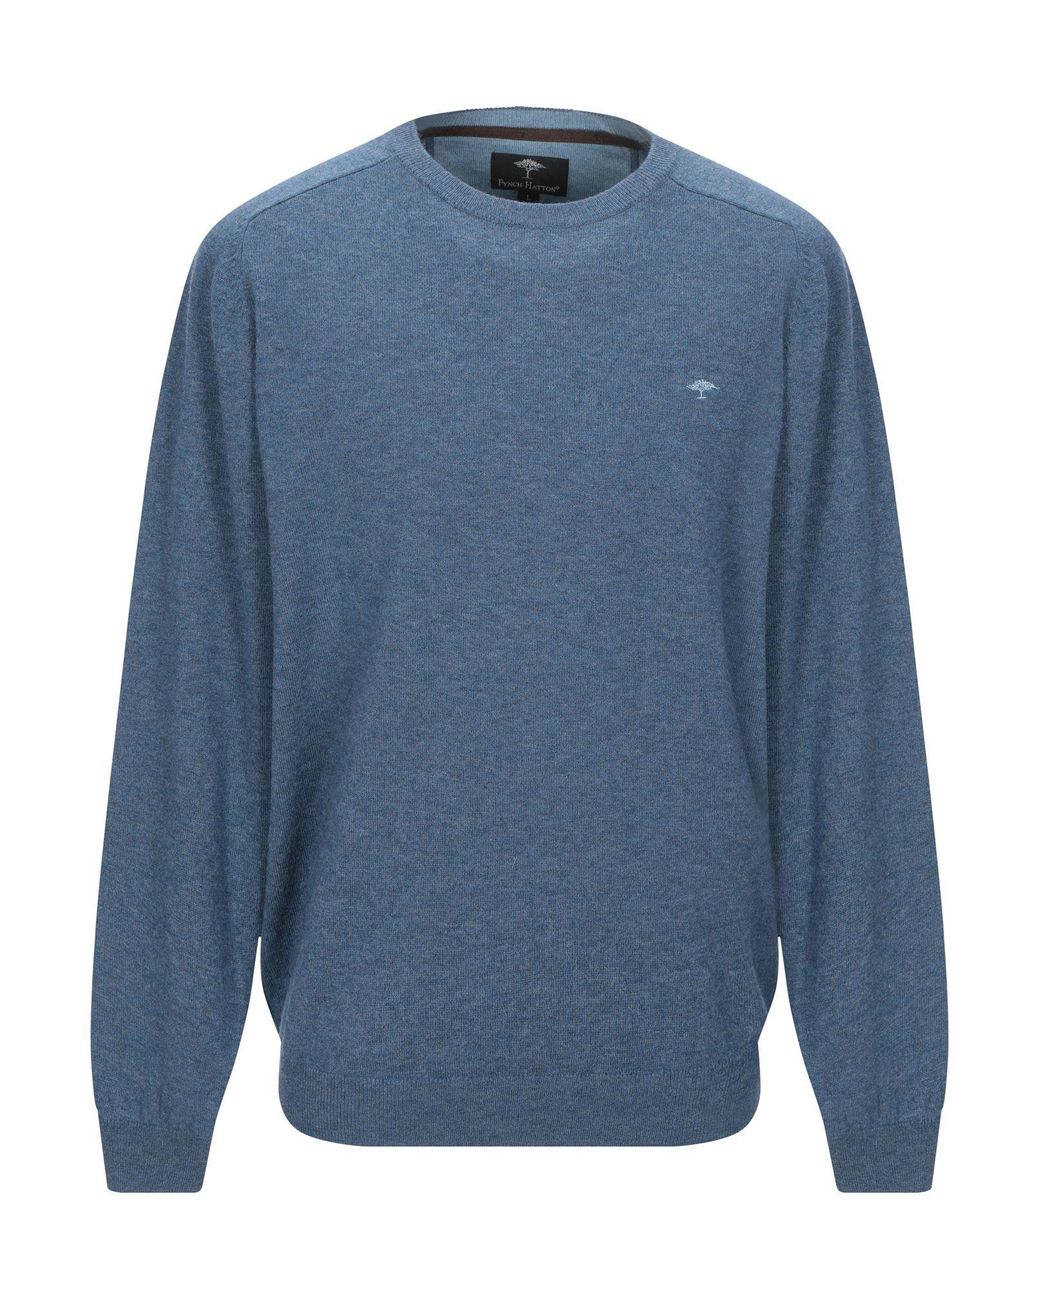 Fynch-Hatton Wool Sweater in Slate Blue (Blue) for Men - Lyst